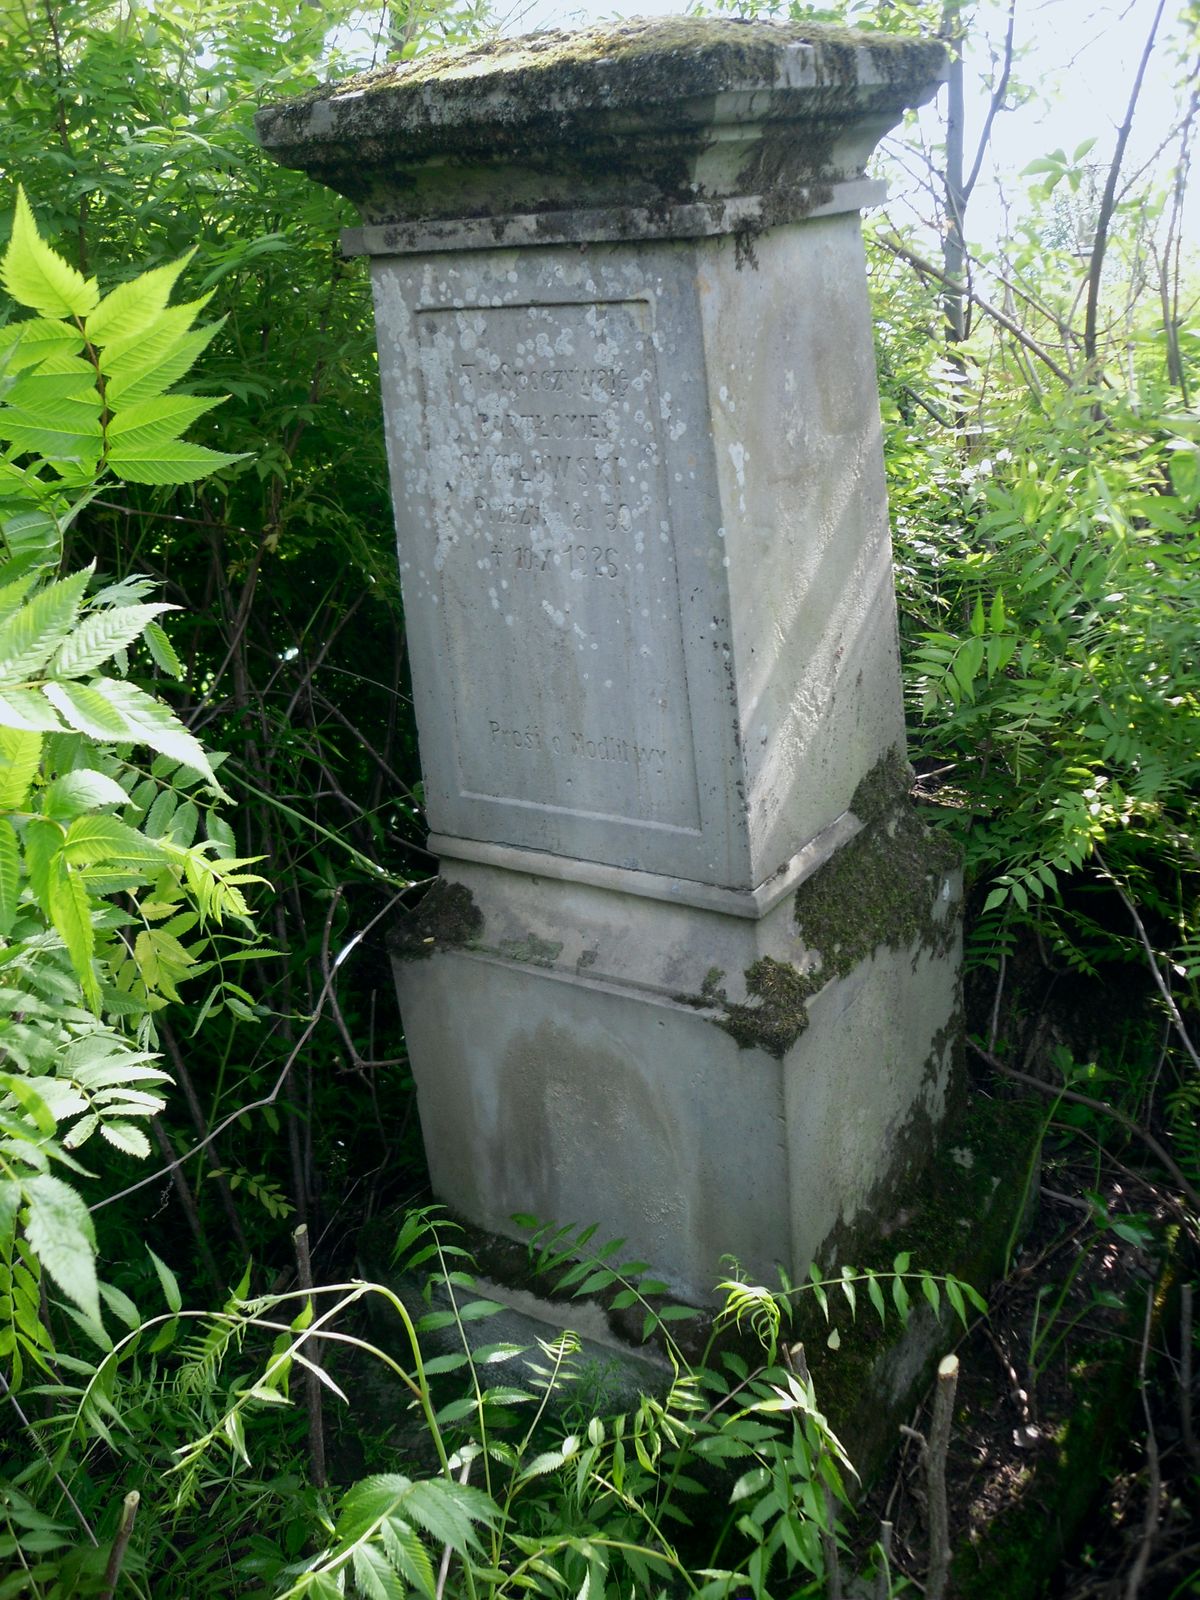 Tombstone of Bartholomew Sokolowski, Kozlowo cemetery